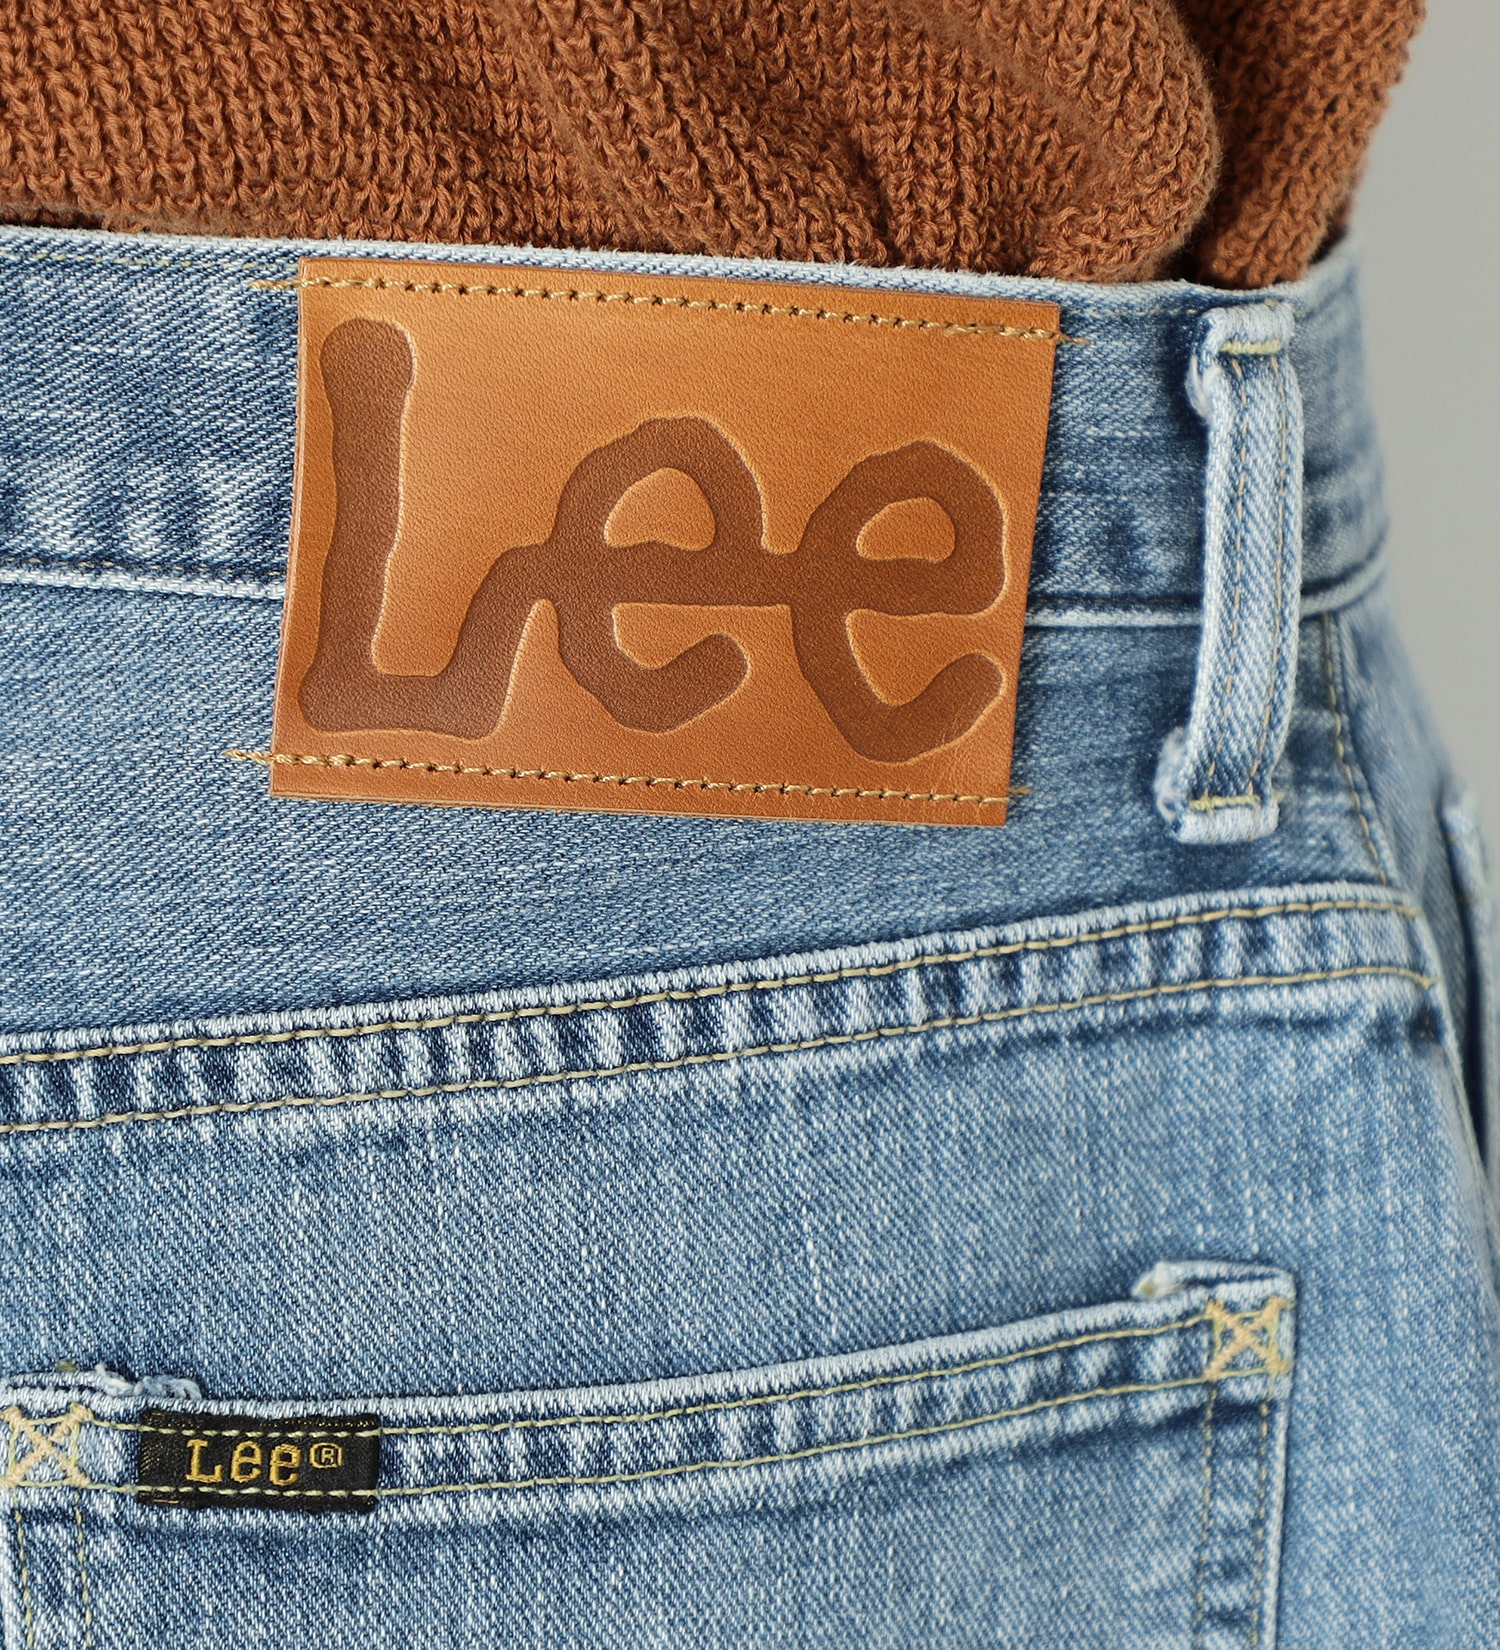 Lee(リー)のSUPERSIZED ストレートデニムパンツ|パンツ/デニムパンツ/メンズ|中色ブルー